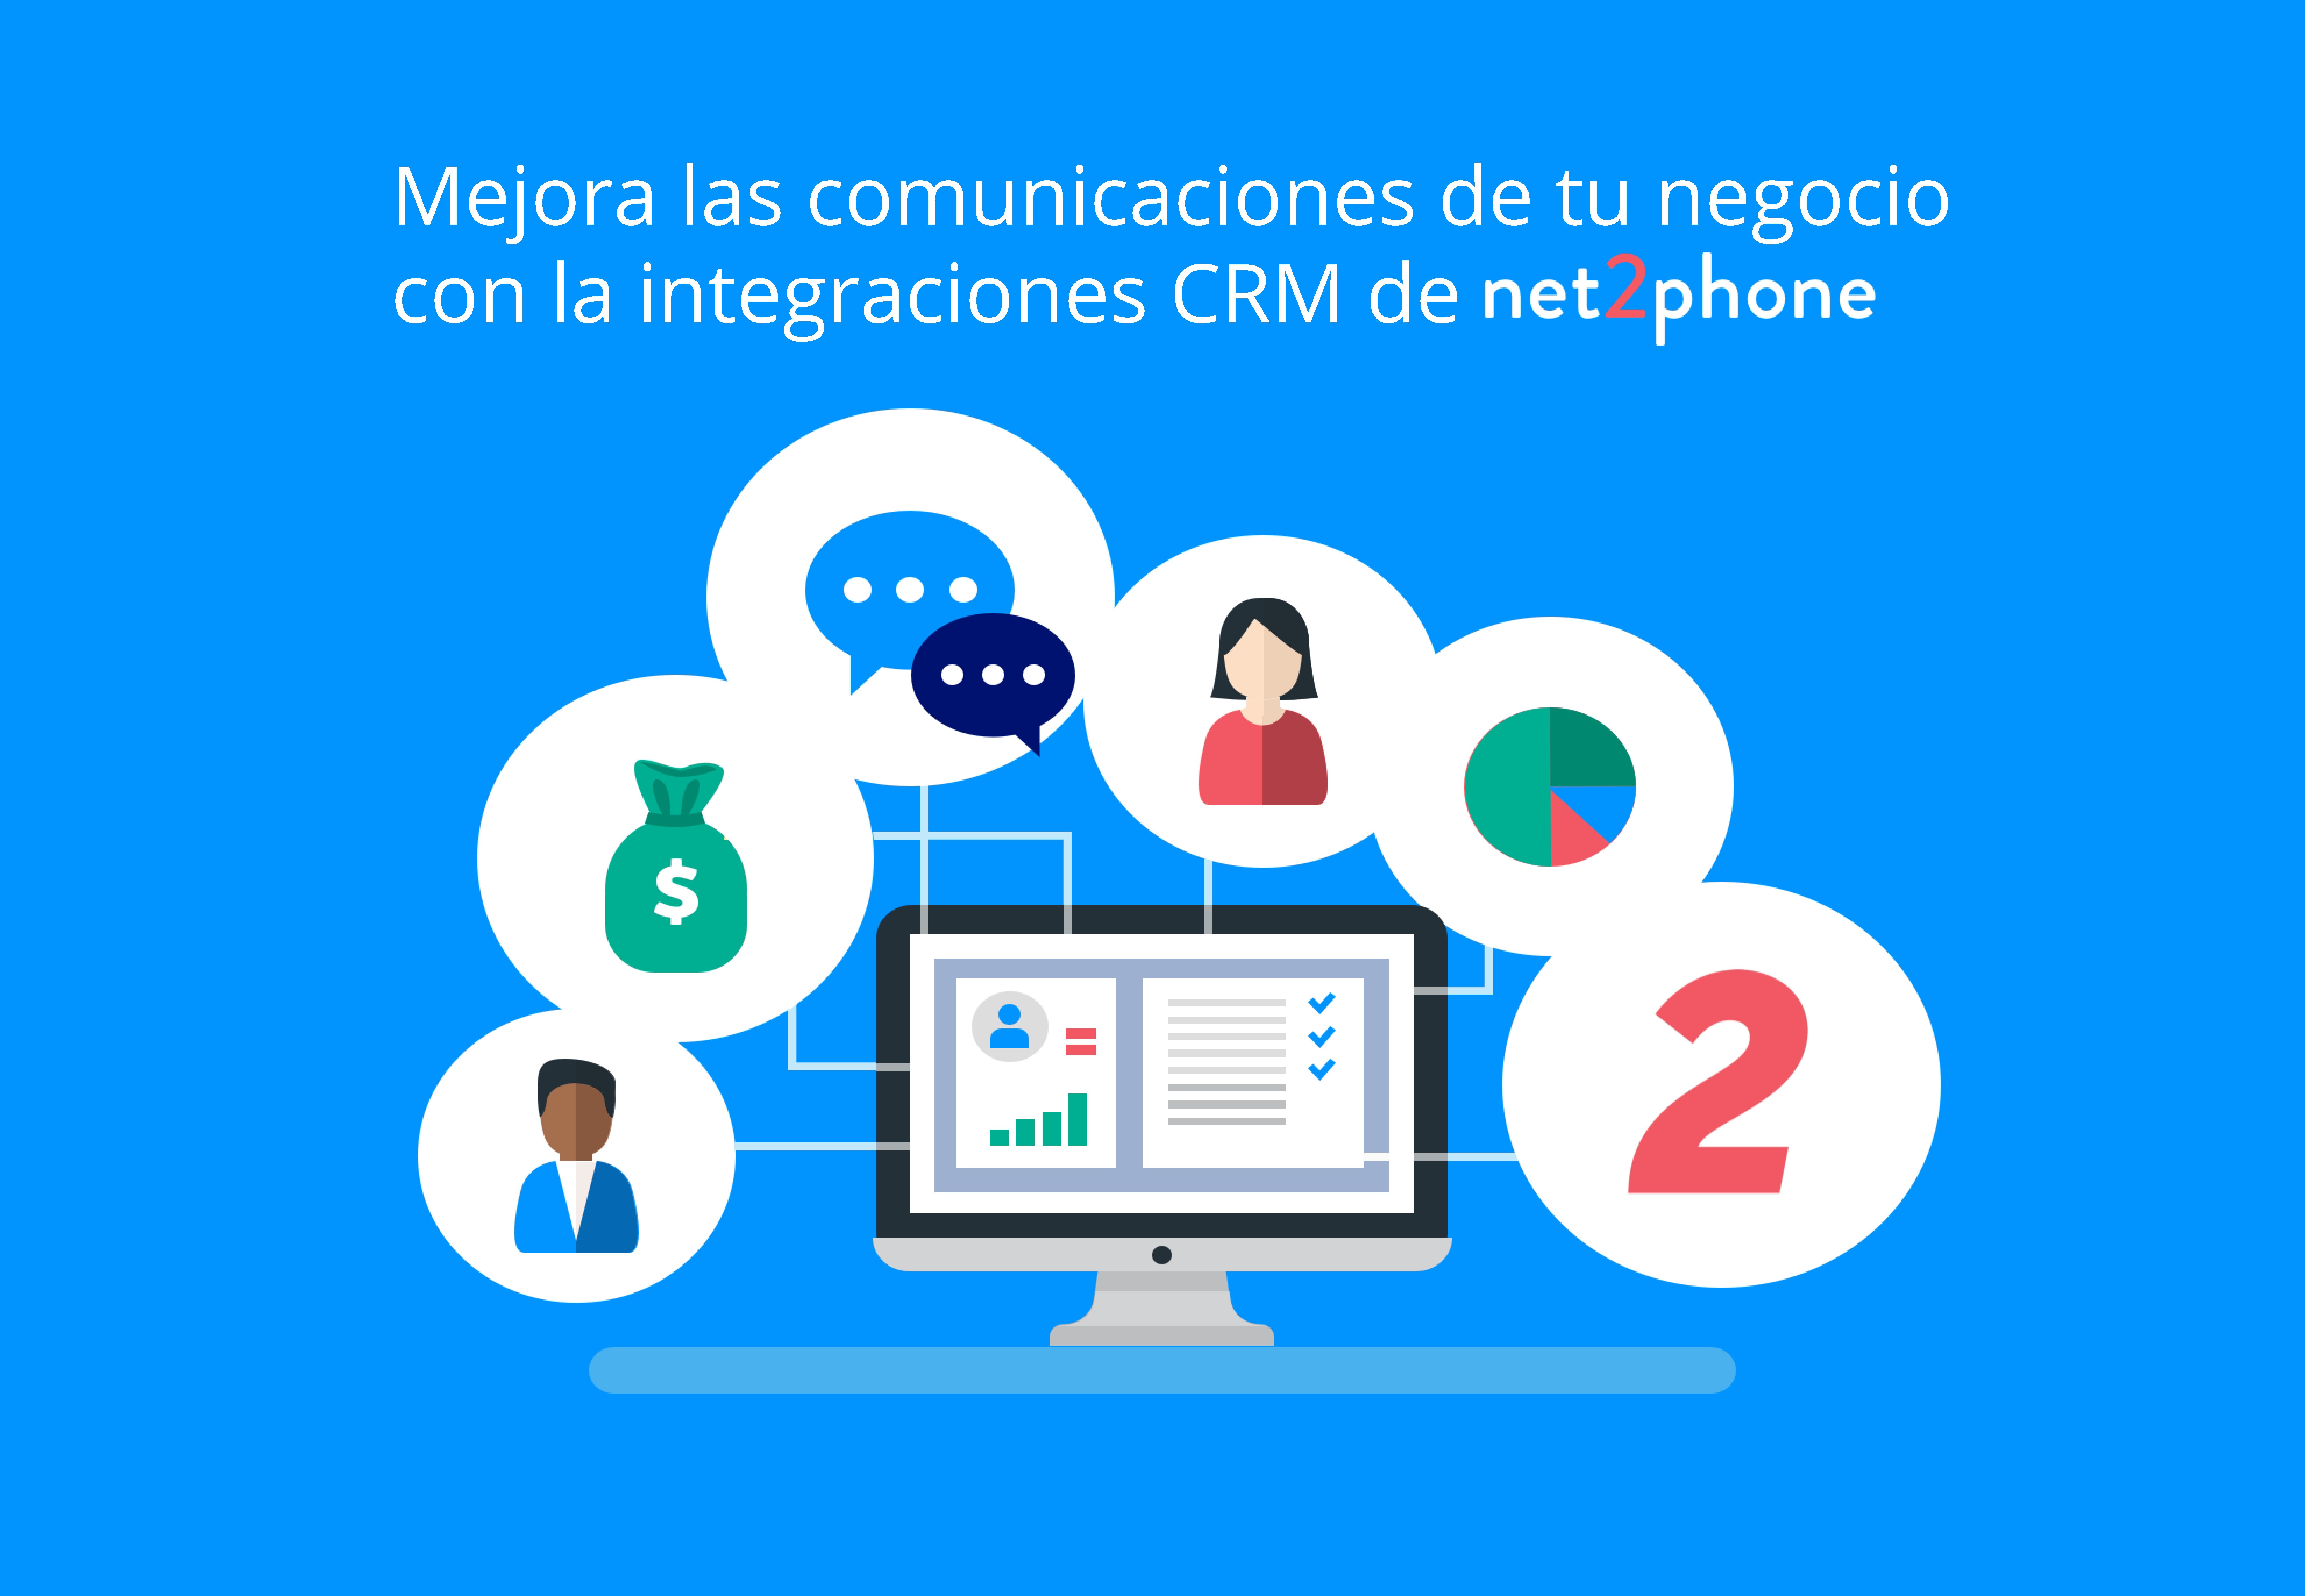 Cómo la integración de servicios de telefonía con plataformas CRM beneficia a las empresas